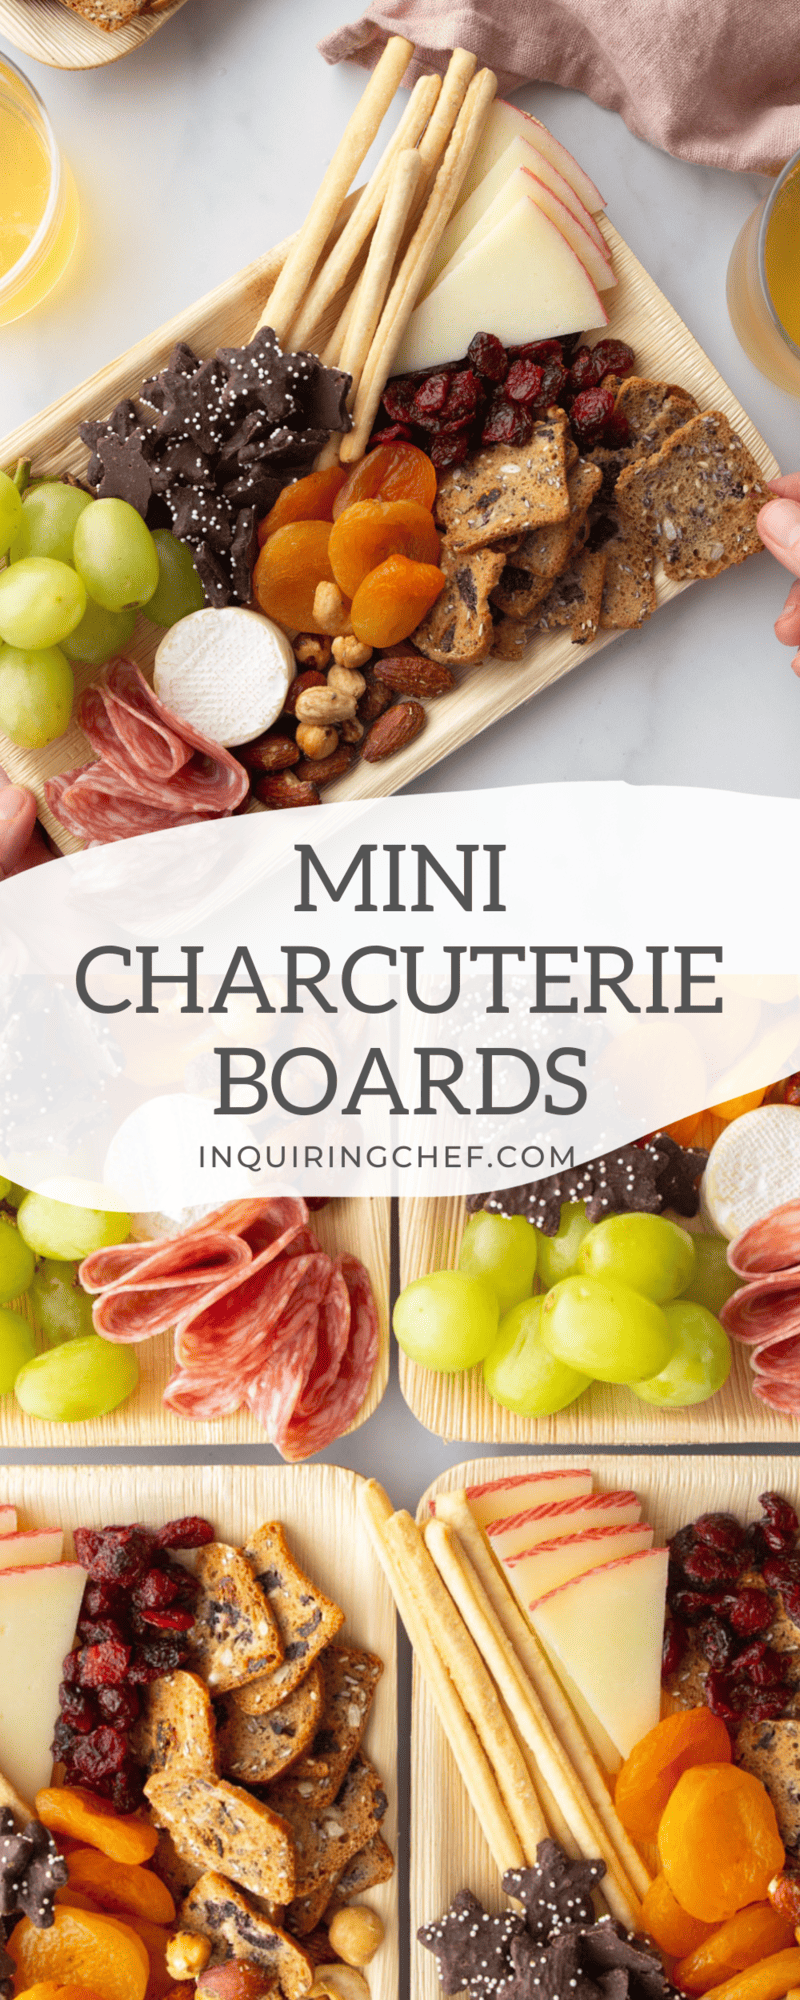 mini charcuterie boards